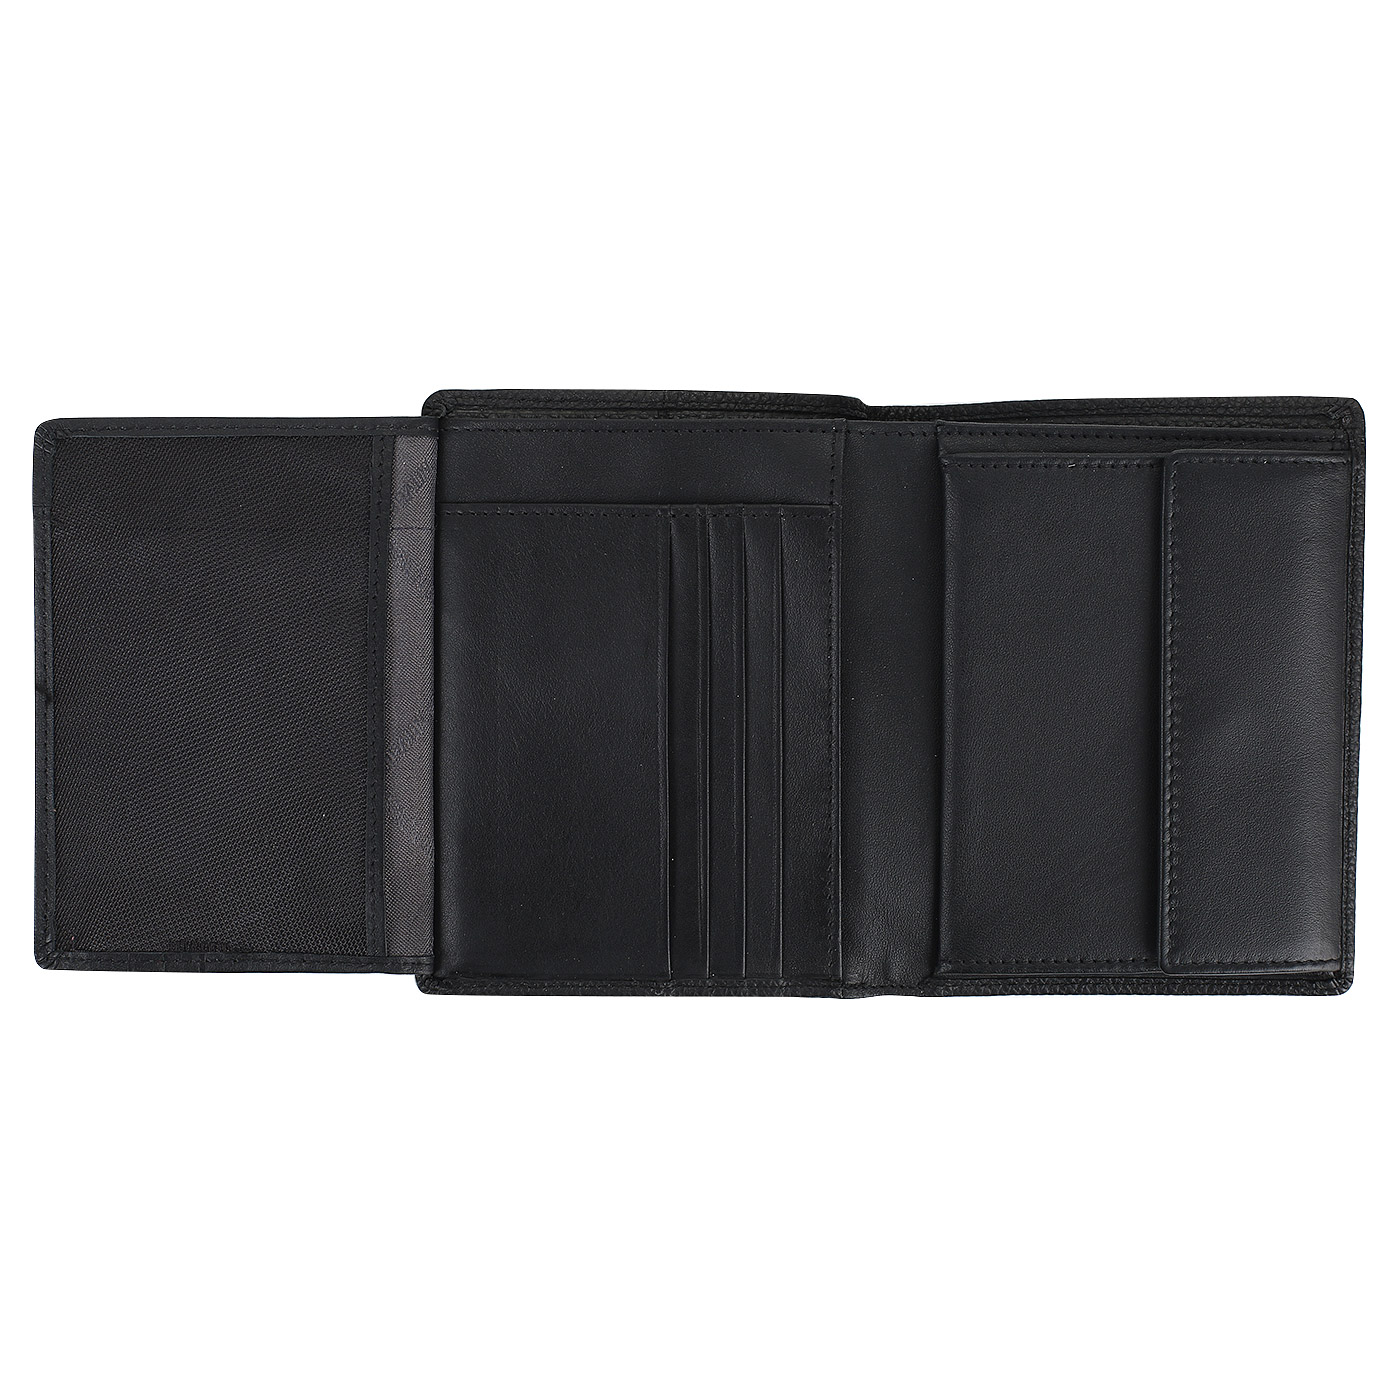 Черное портмоне из кожи Braun Buffel Varese